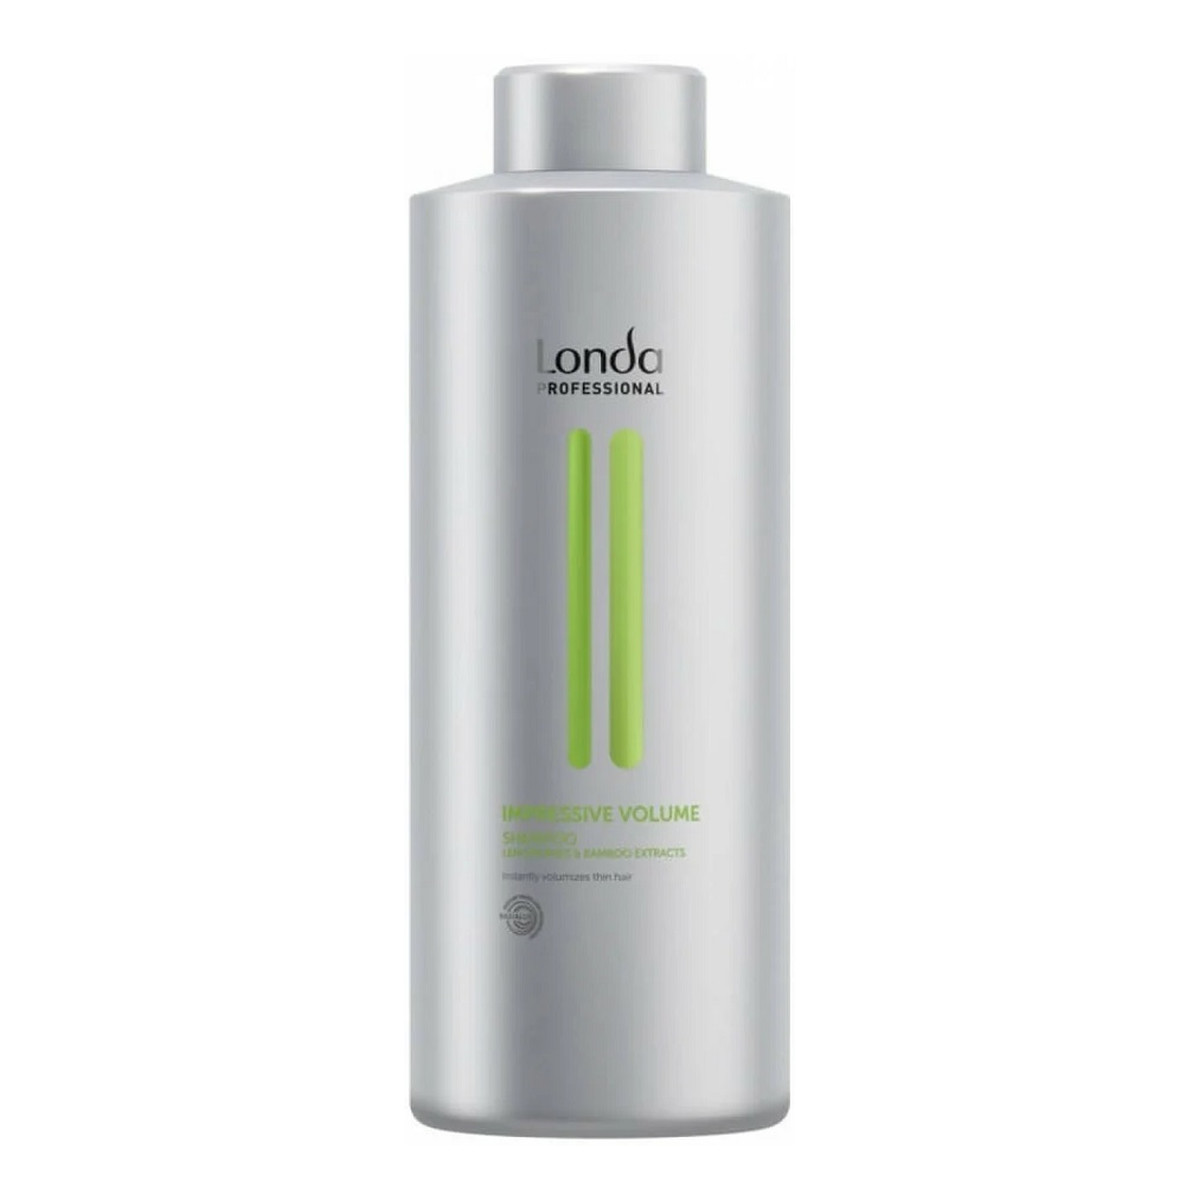 Londa Professional Professional Impressive Volume Shampoo szampon zwiększający objętość włosów 1000ml